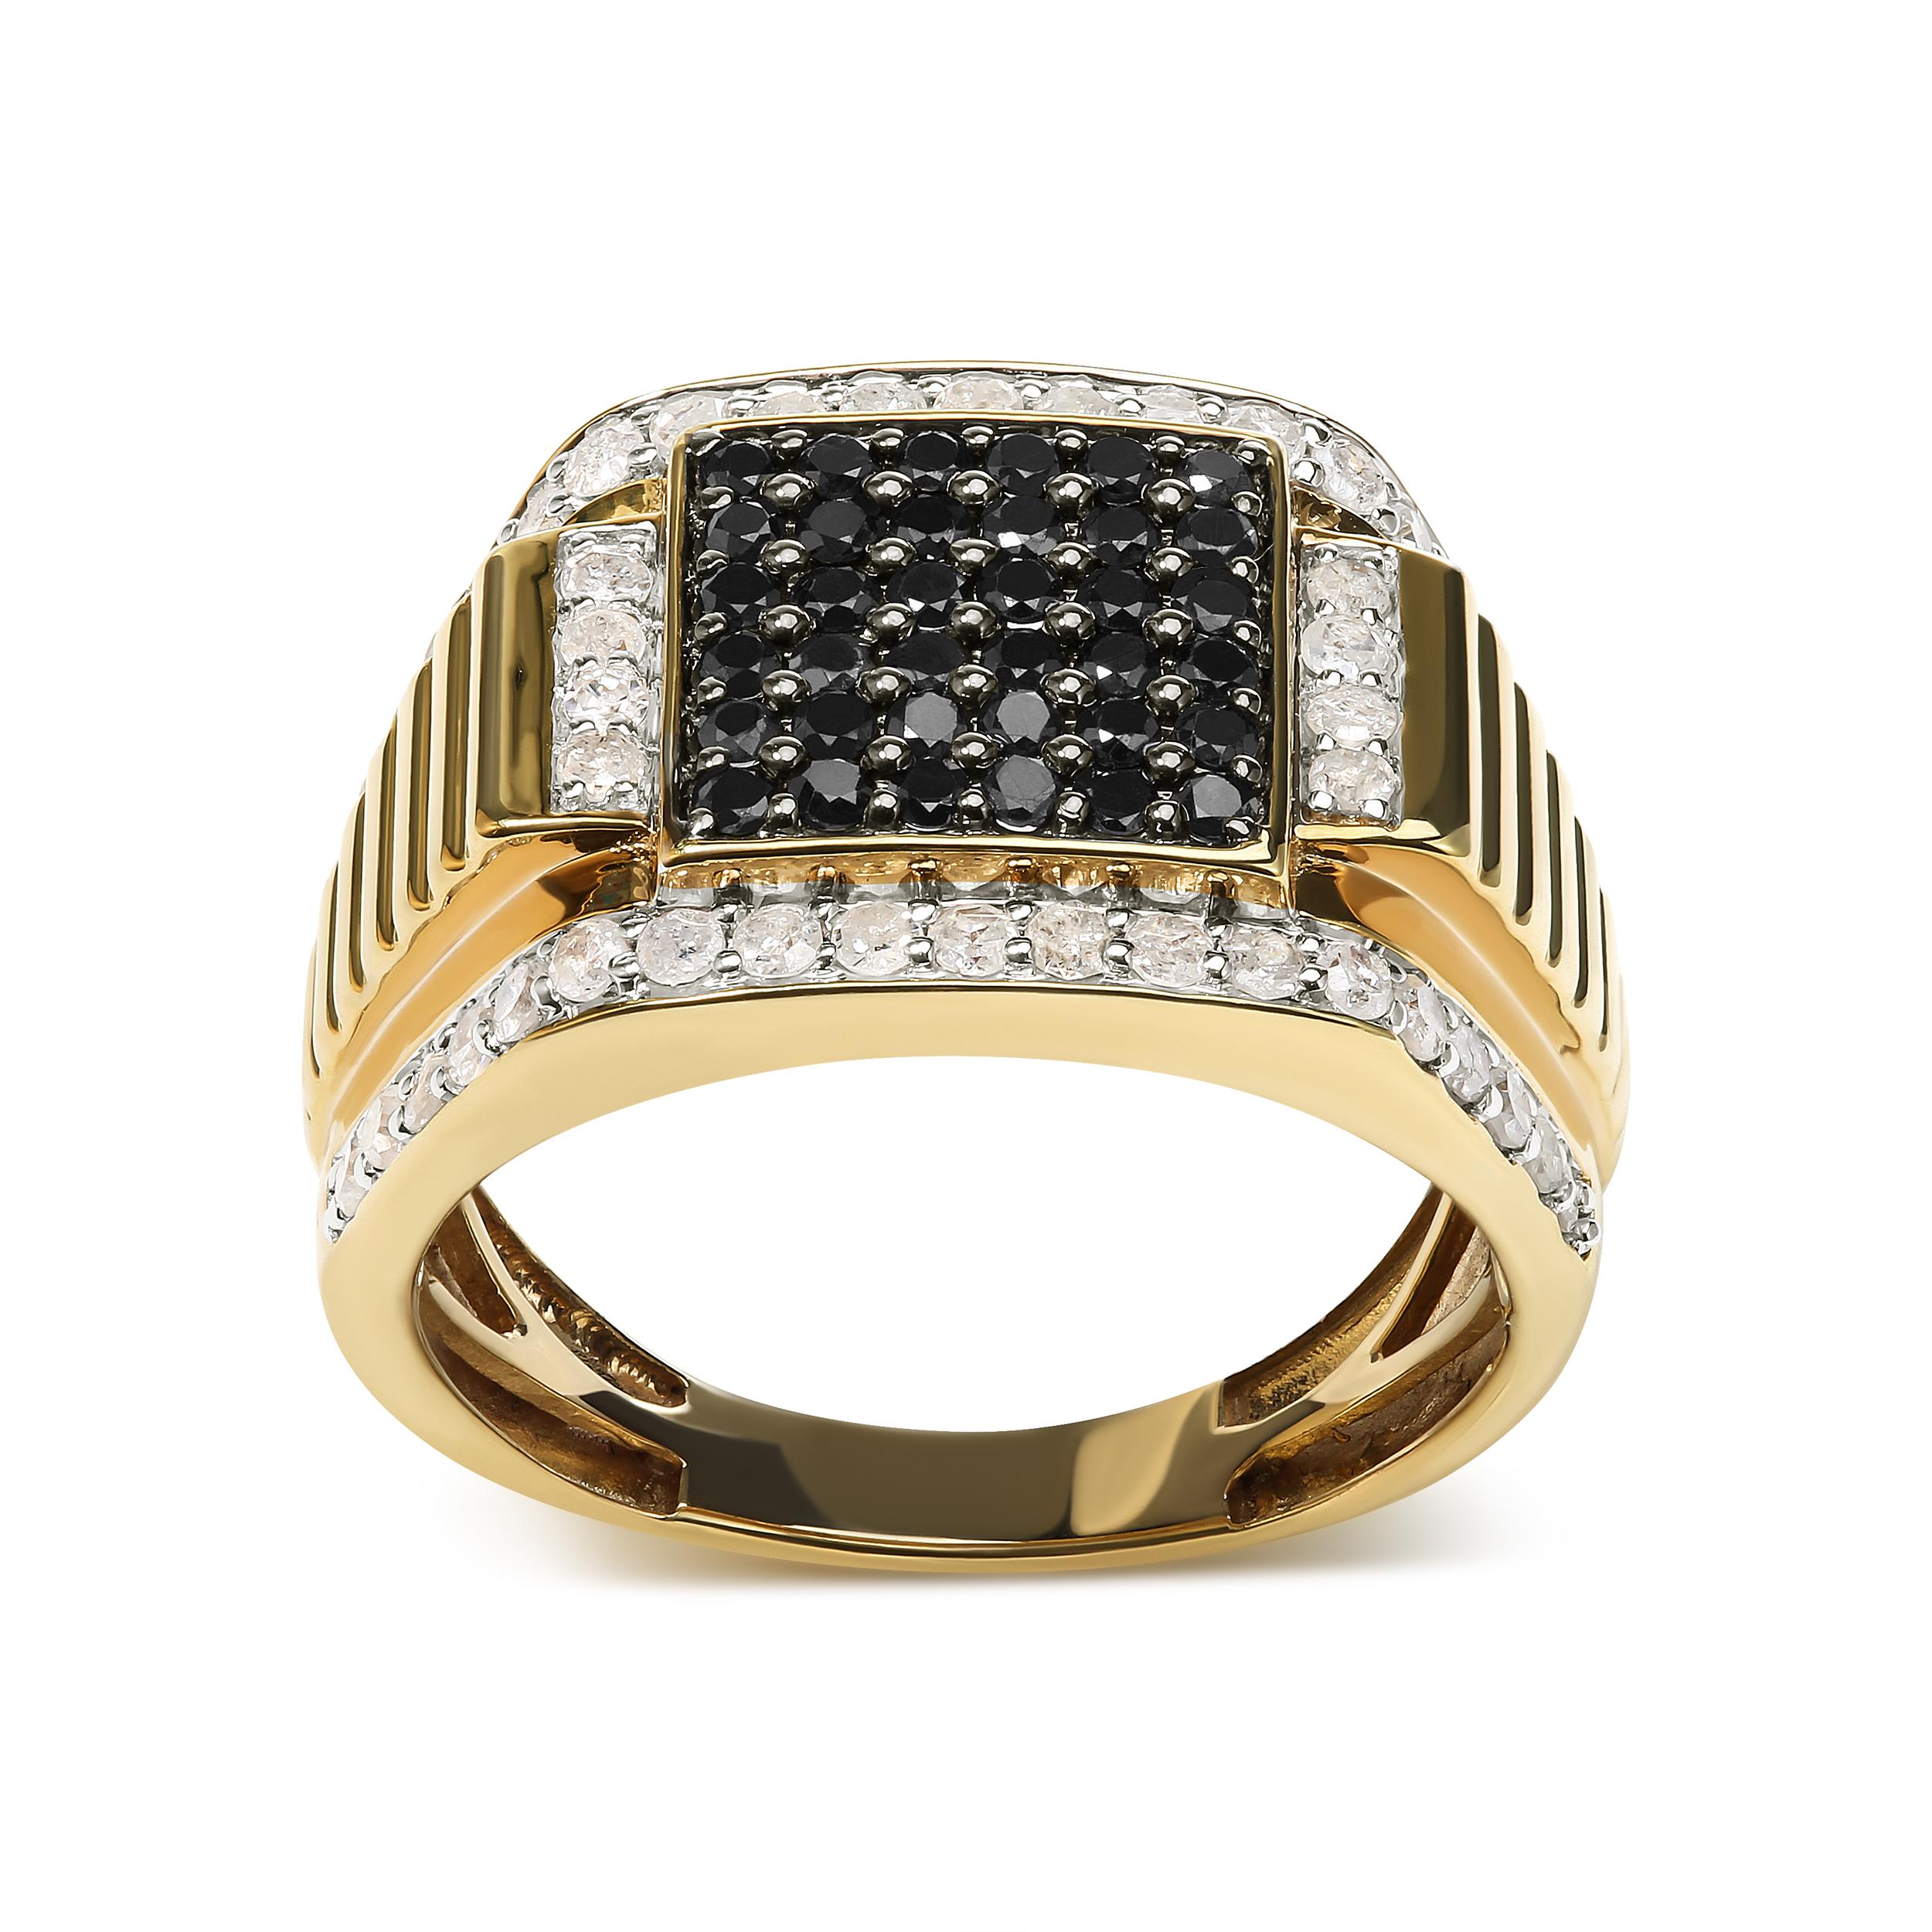 Lassen Sie sich von Kontrasten verführen mit diesem bemerkenswerten Cluster-Ring für Männer. Das Band aus 925er Sterlingsilber ist mit 14-karätigem Gelbgold überzogen und dient als Leinwand für eine faszinierende Präsentation von Diamanten.